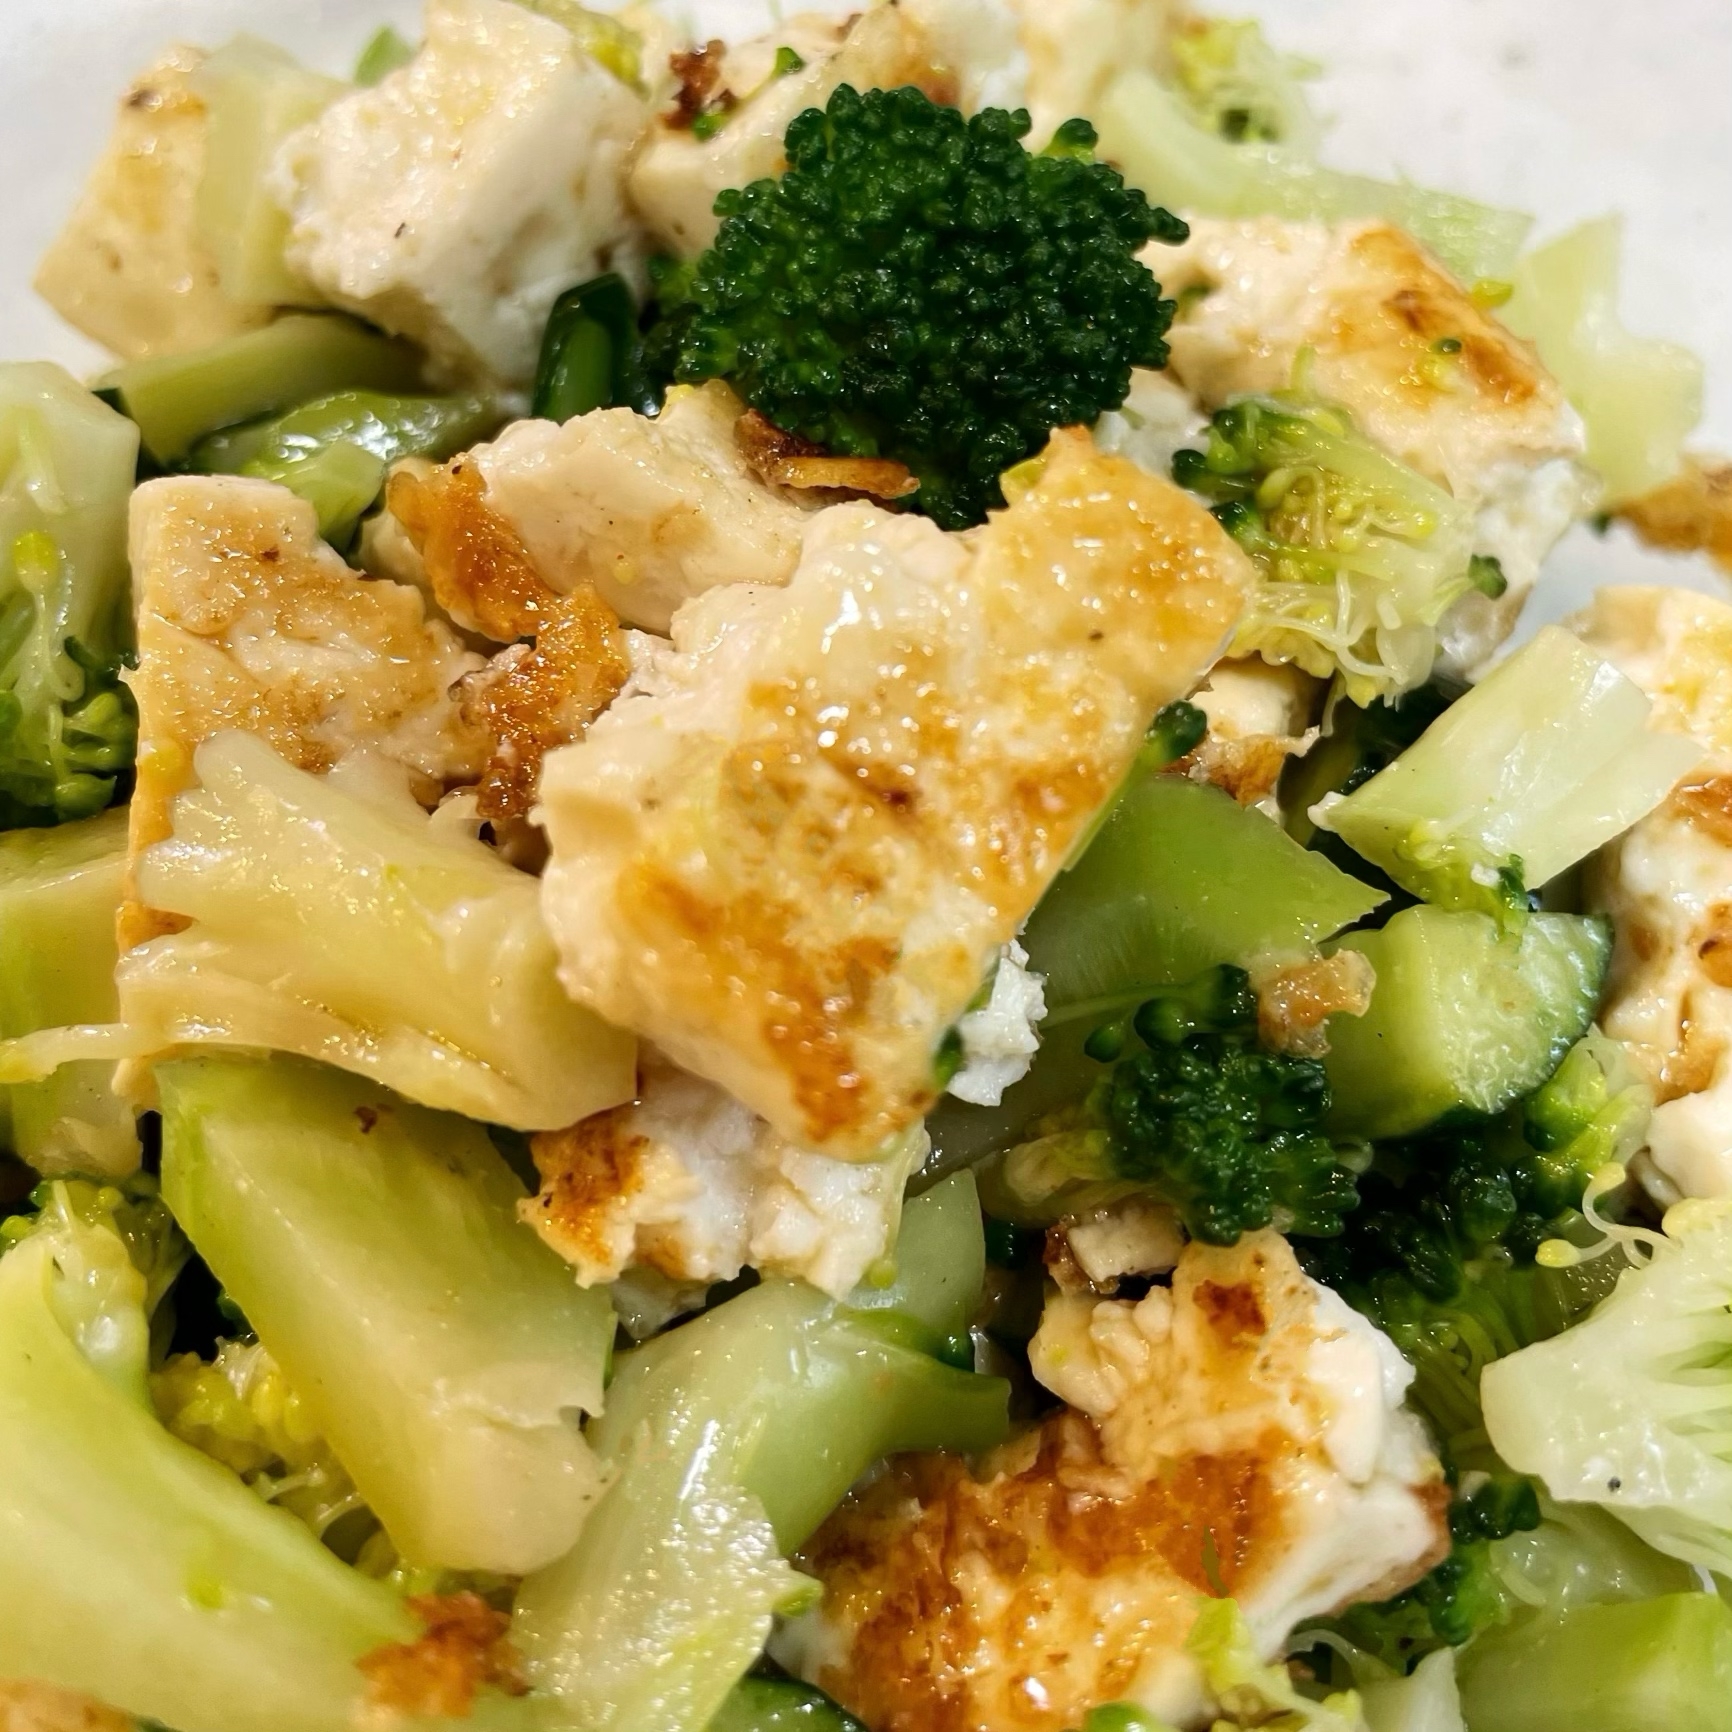 カリカリ豆腐とブロッコリー・きゅうりのサラダ